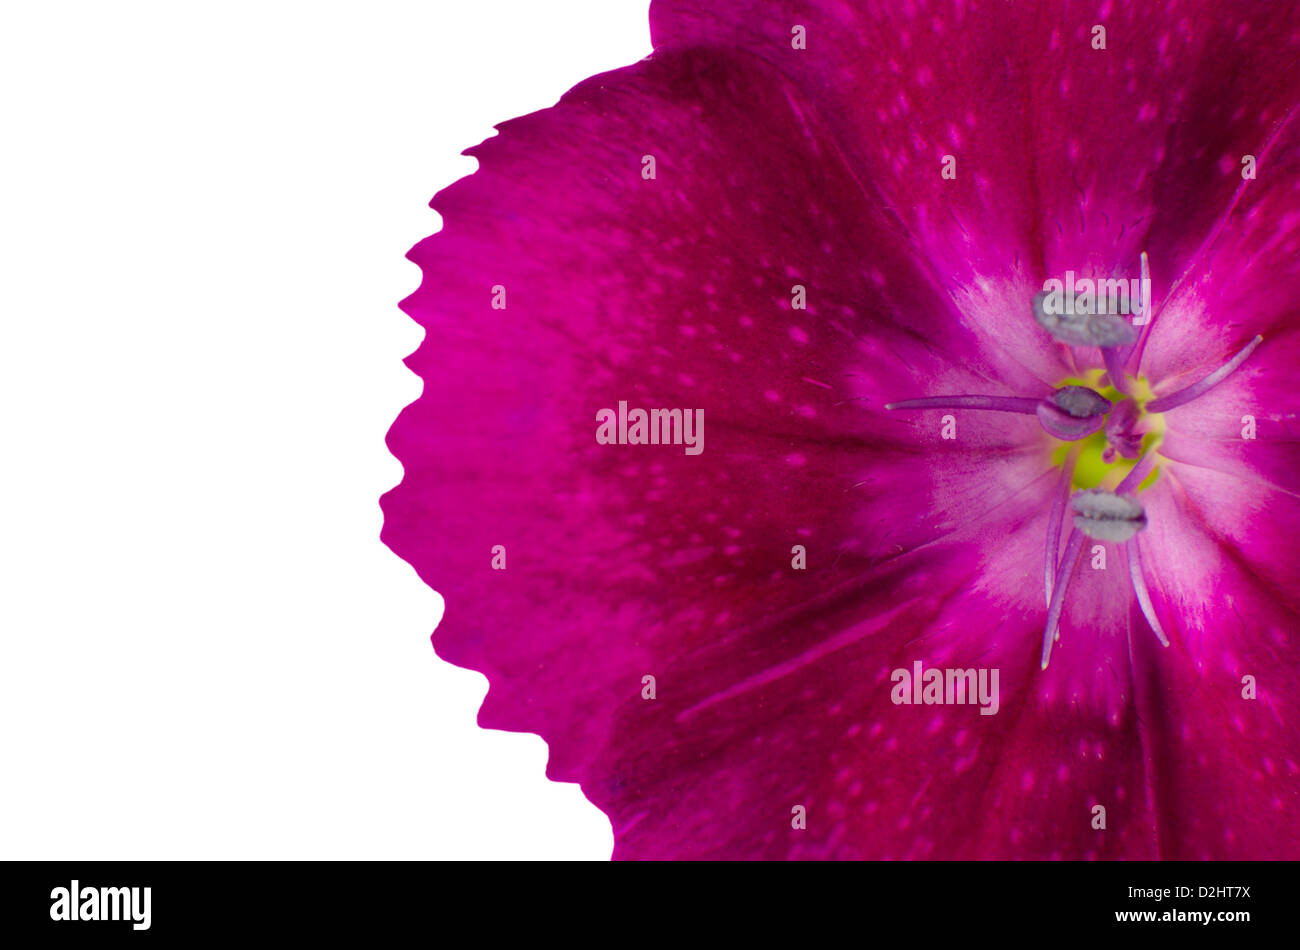 Teil lila Diathus Blüte, Isolated on White Background Stockfoto